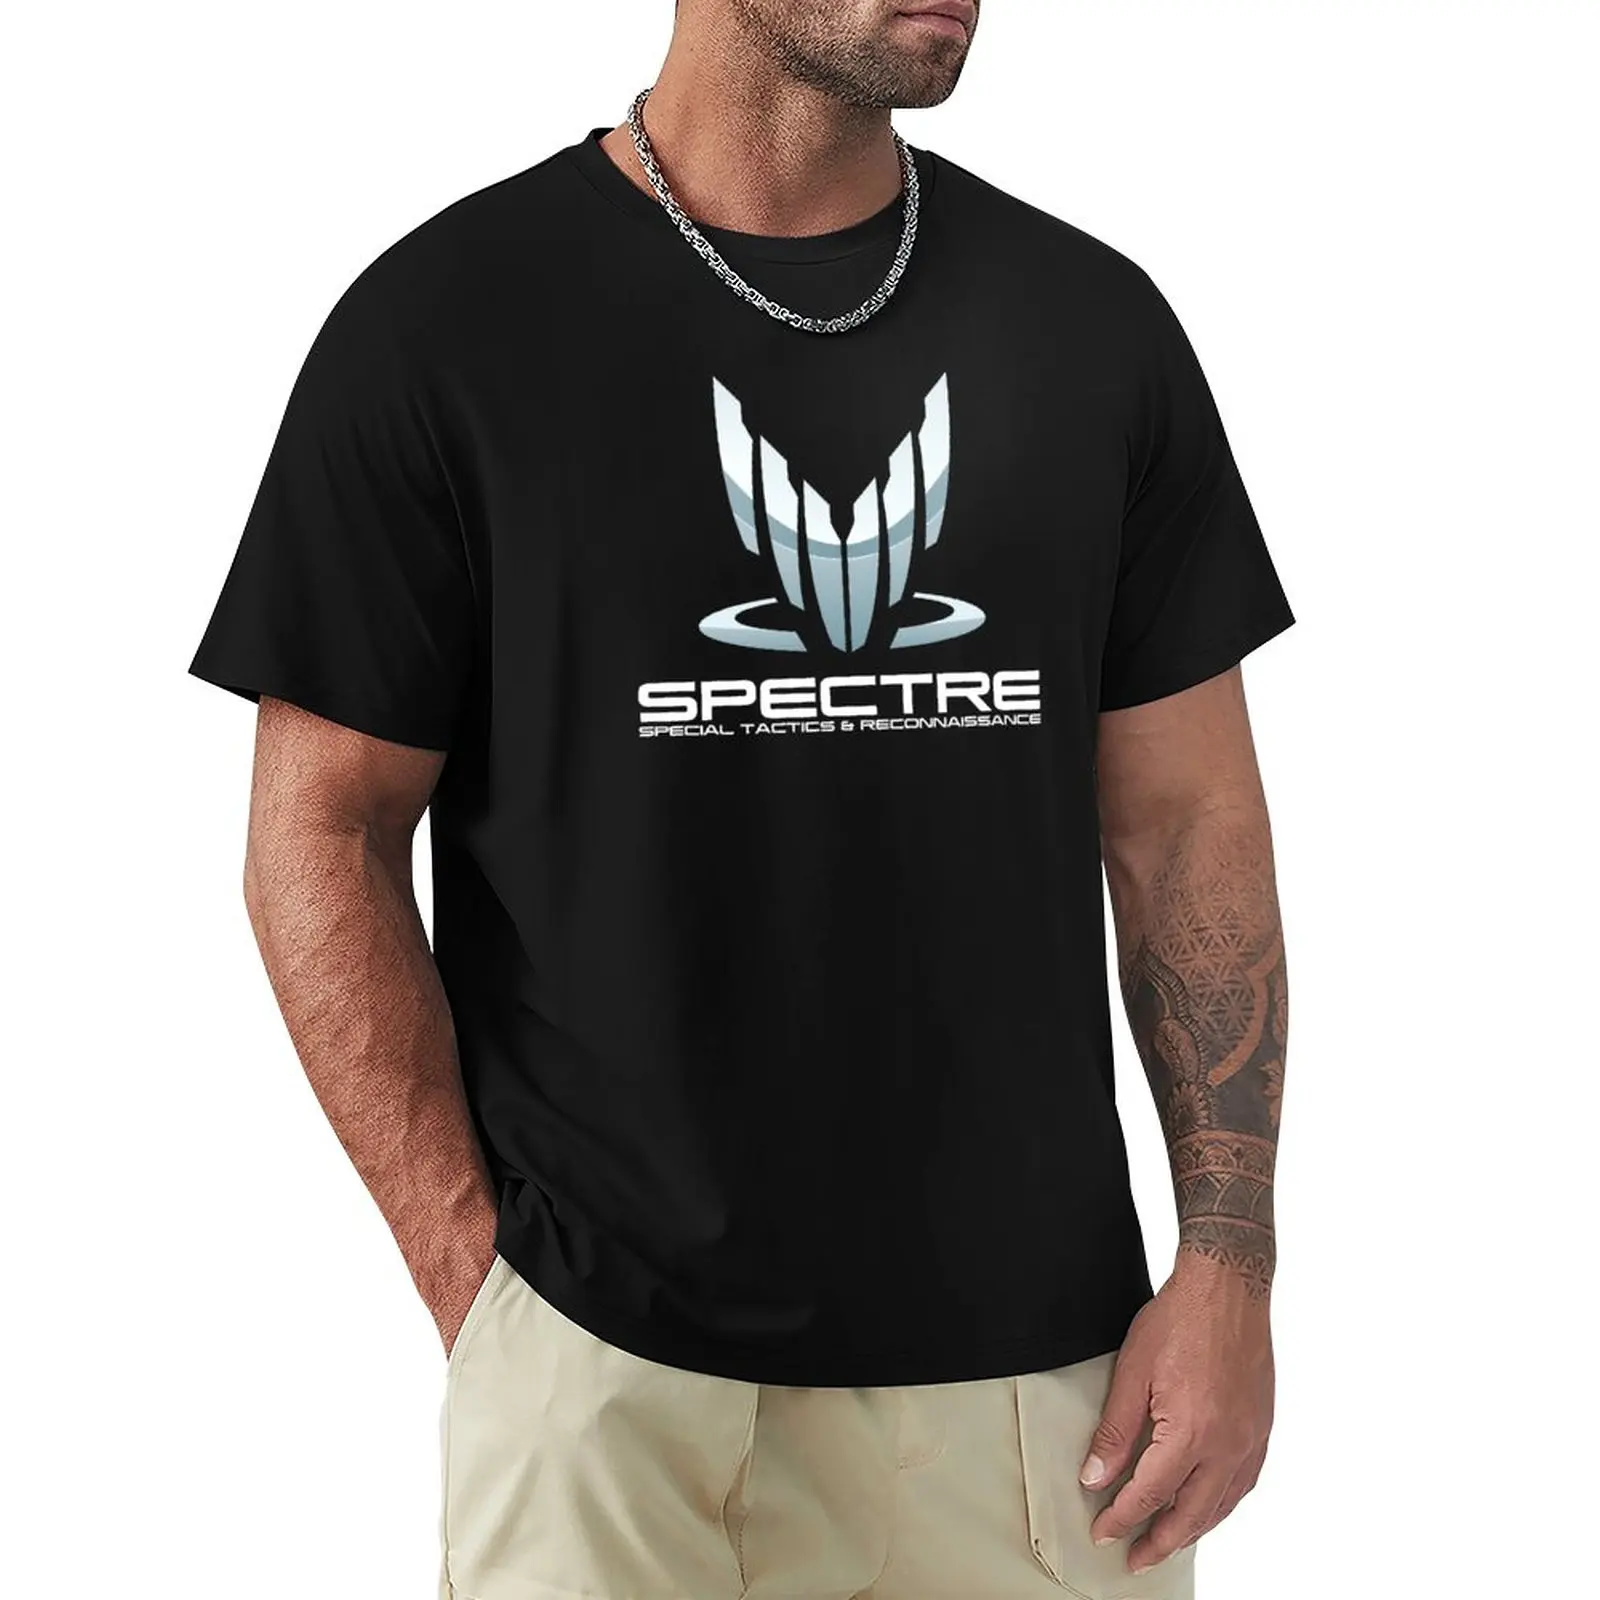 

Spectre- Mass Effect T-Shirt animal prinfor boys oversized black t shirts for men